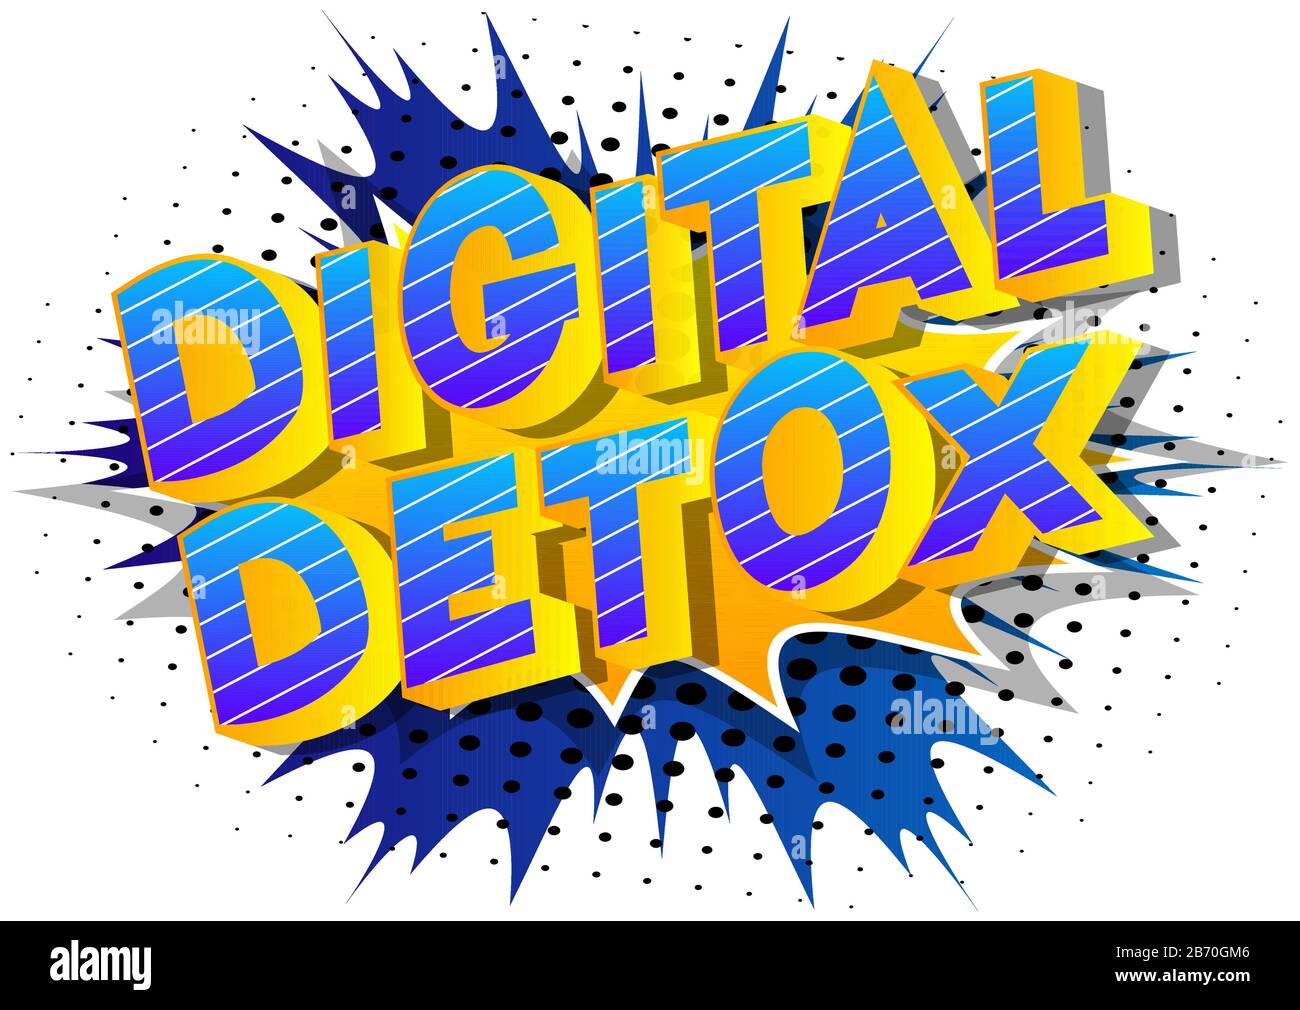 Vettore illustrato fumetto stile libro digitale Detox testo. Illustrazione Vettoriale